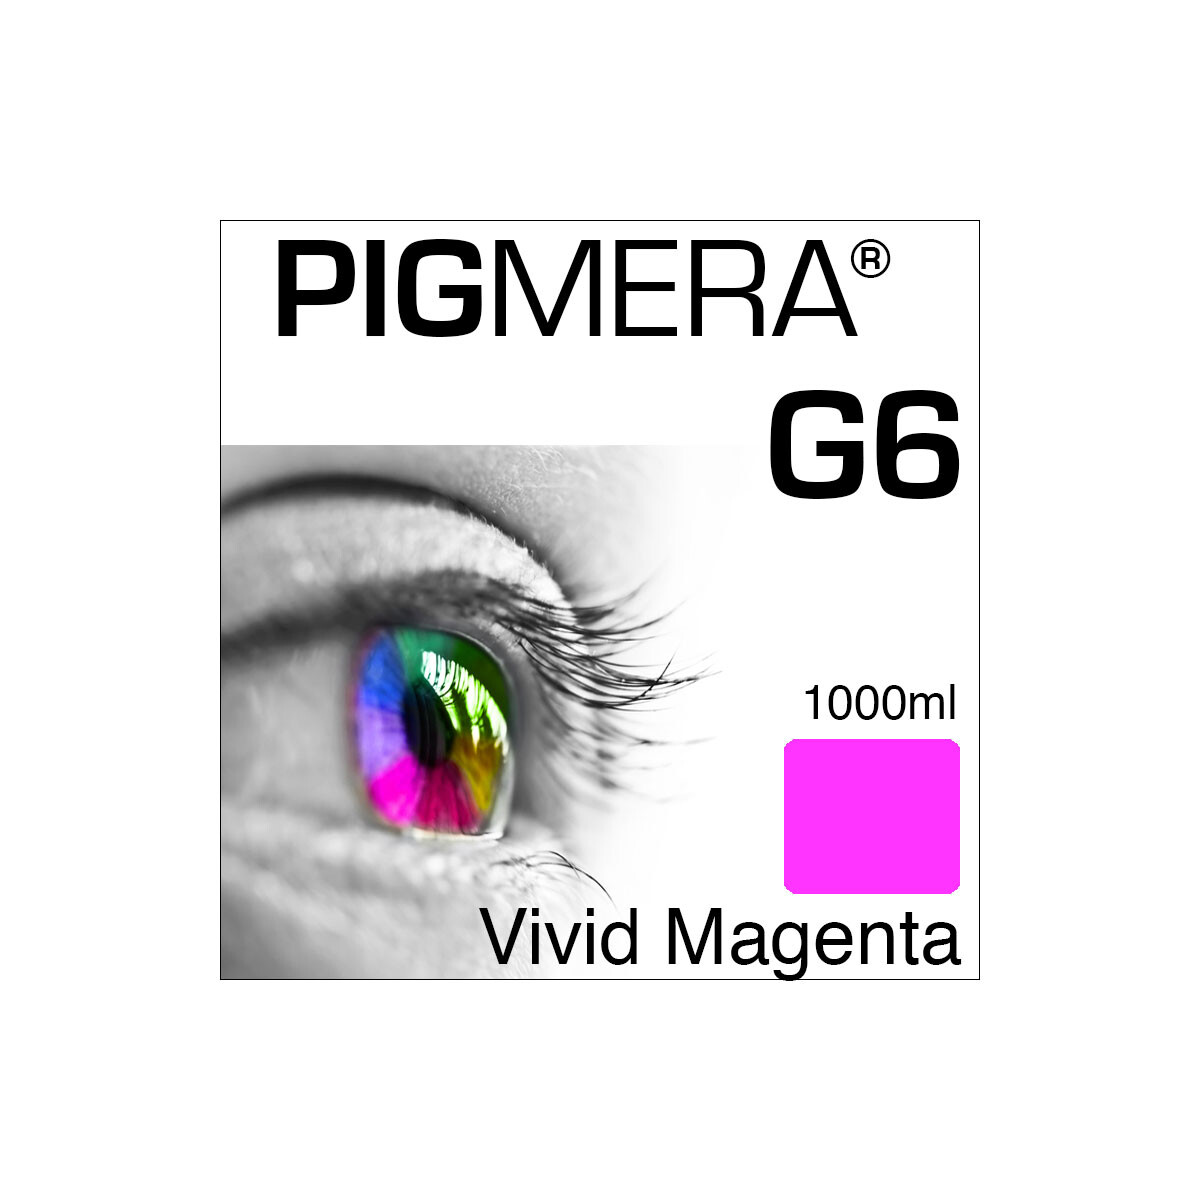 farbenwerk Pigmera G6 Bottle Magenta 1000ml